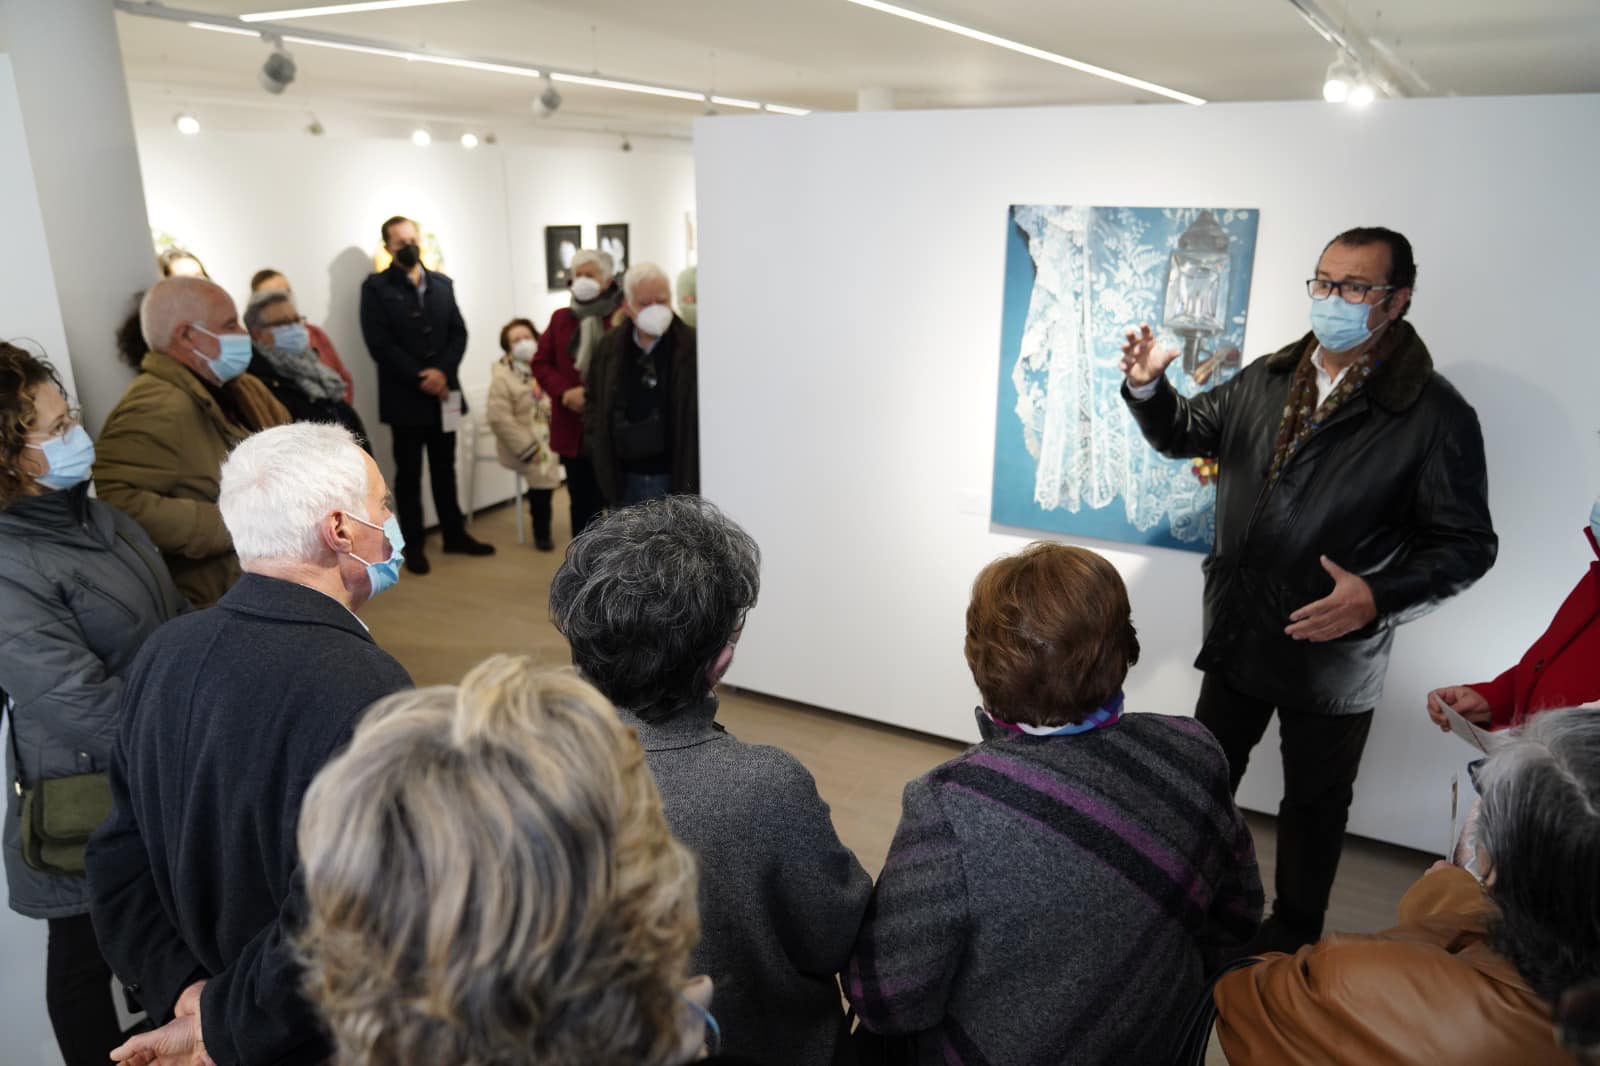 La exposición “Alegría” de Sabino Moreno cierra sus puertas en La Besana de Pozoblanco tras recibir más de mil visitas 1